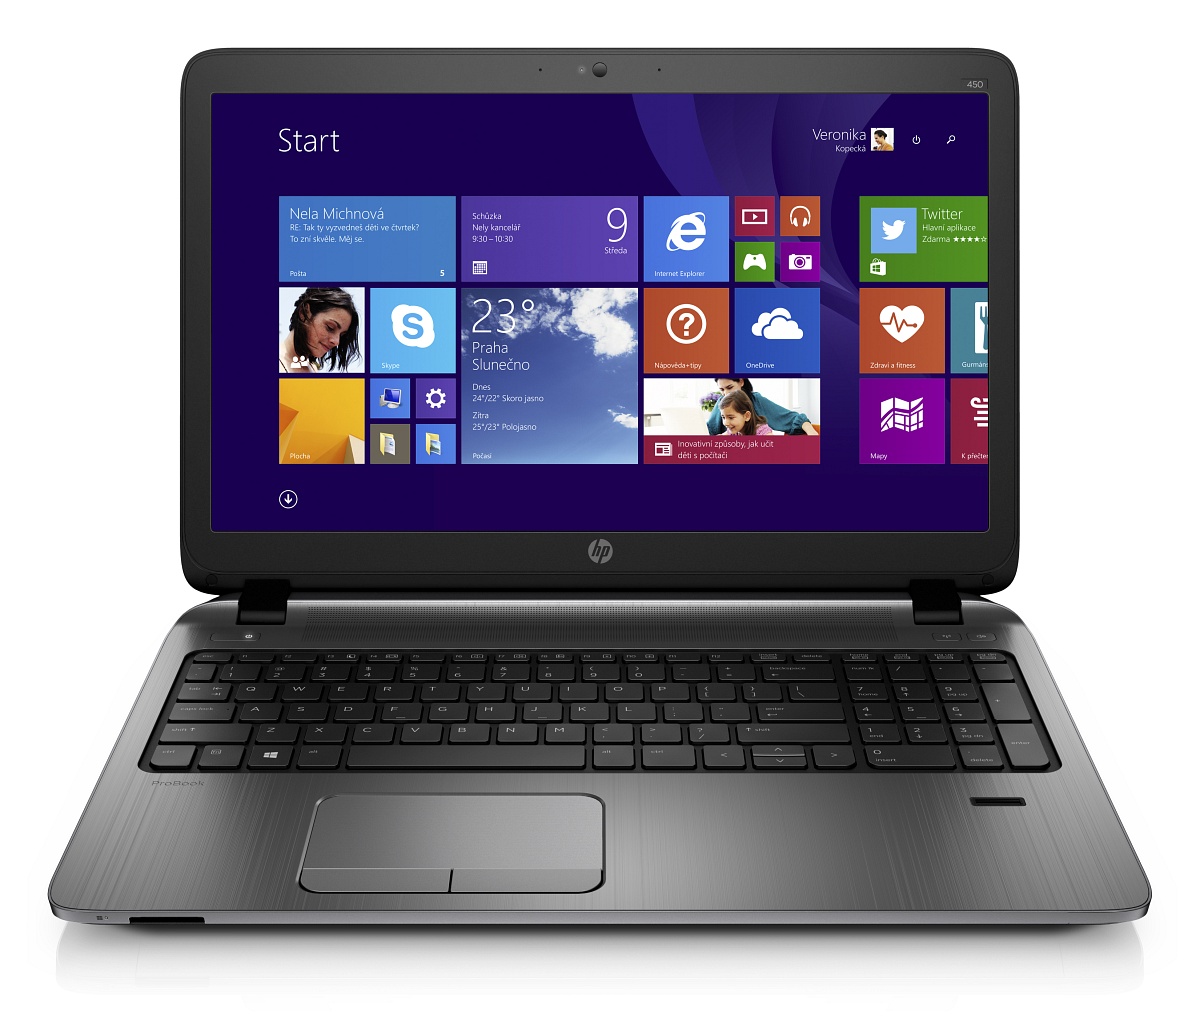 HP ProBook 455 G2 (G6W48EA)